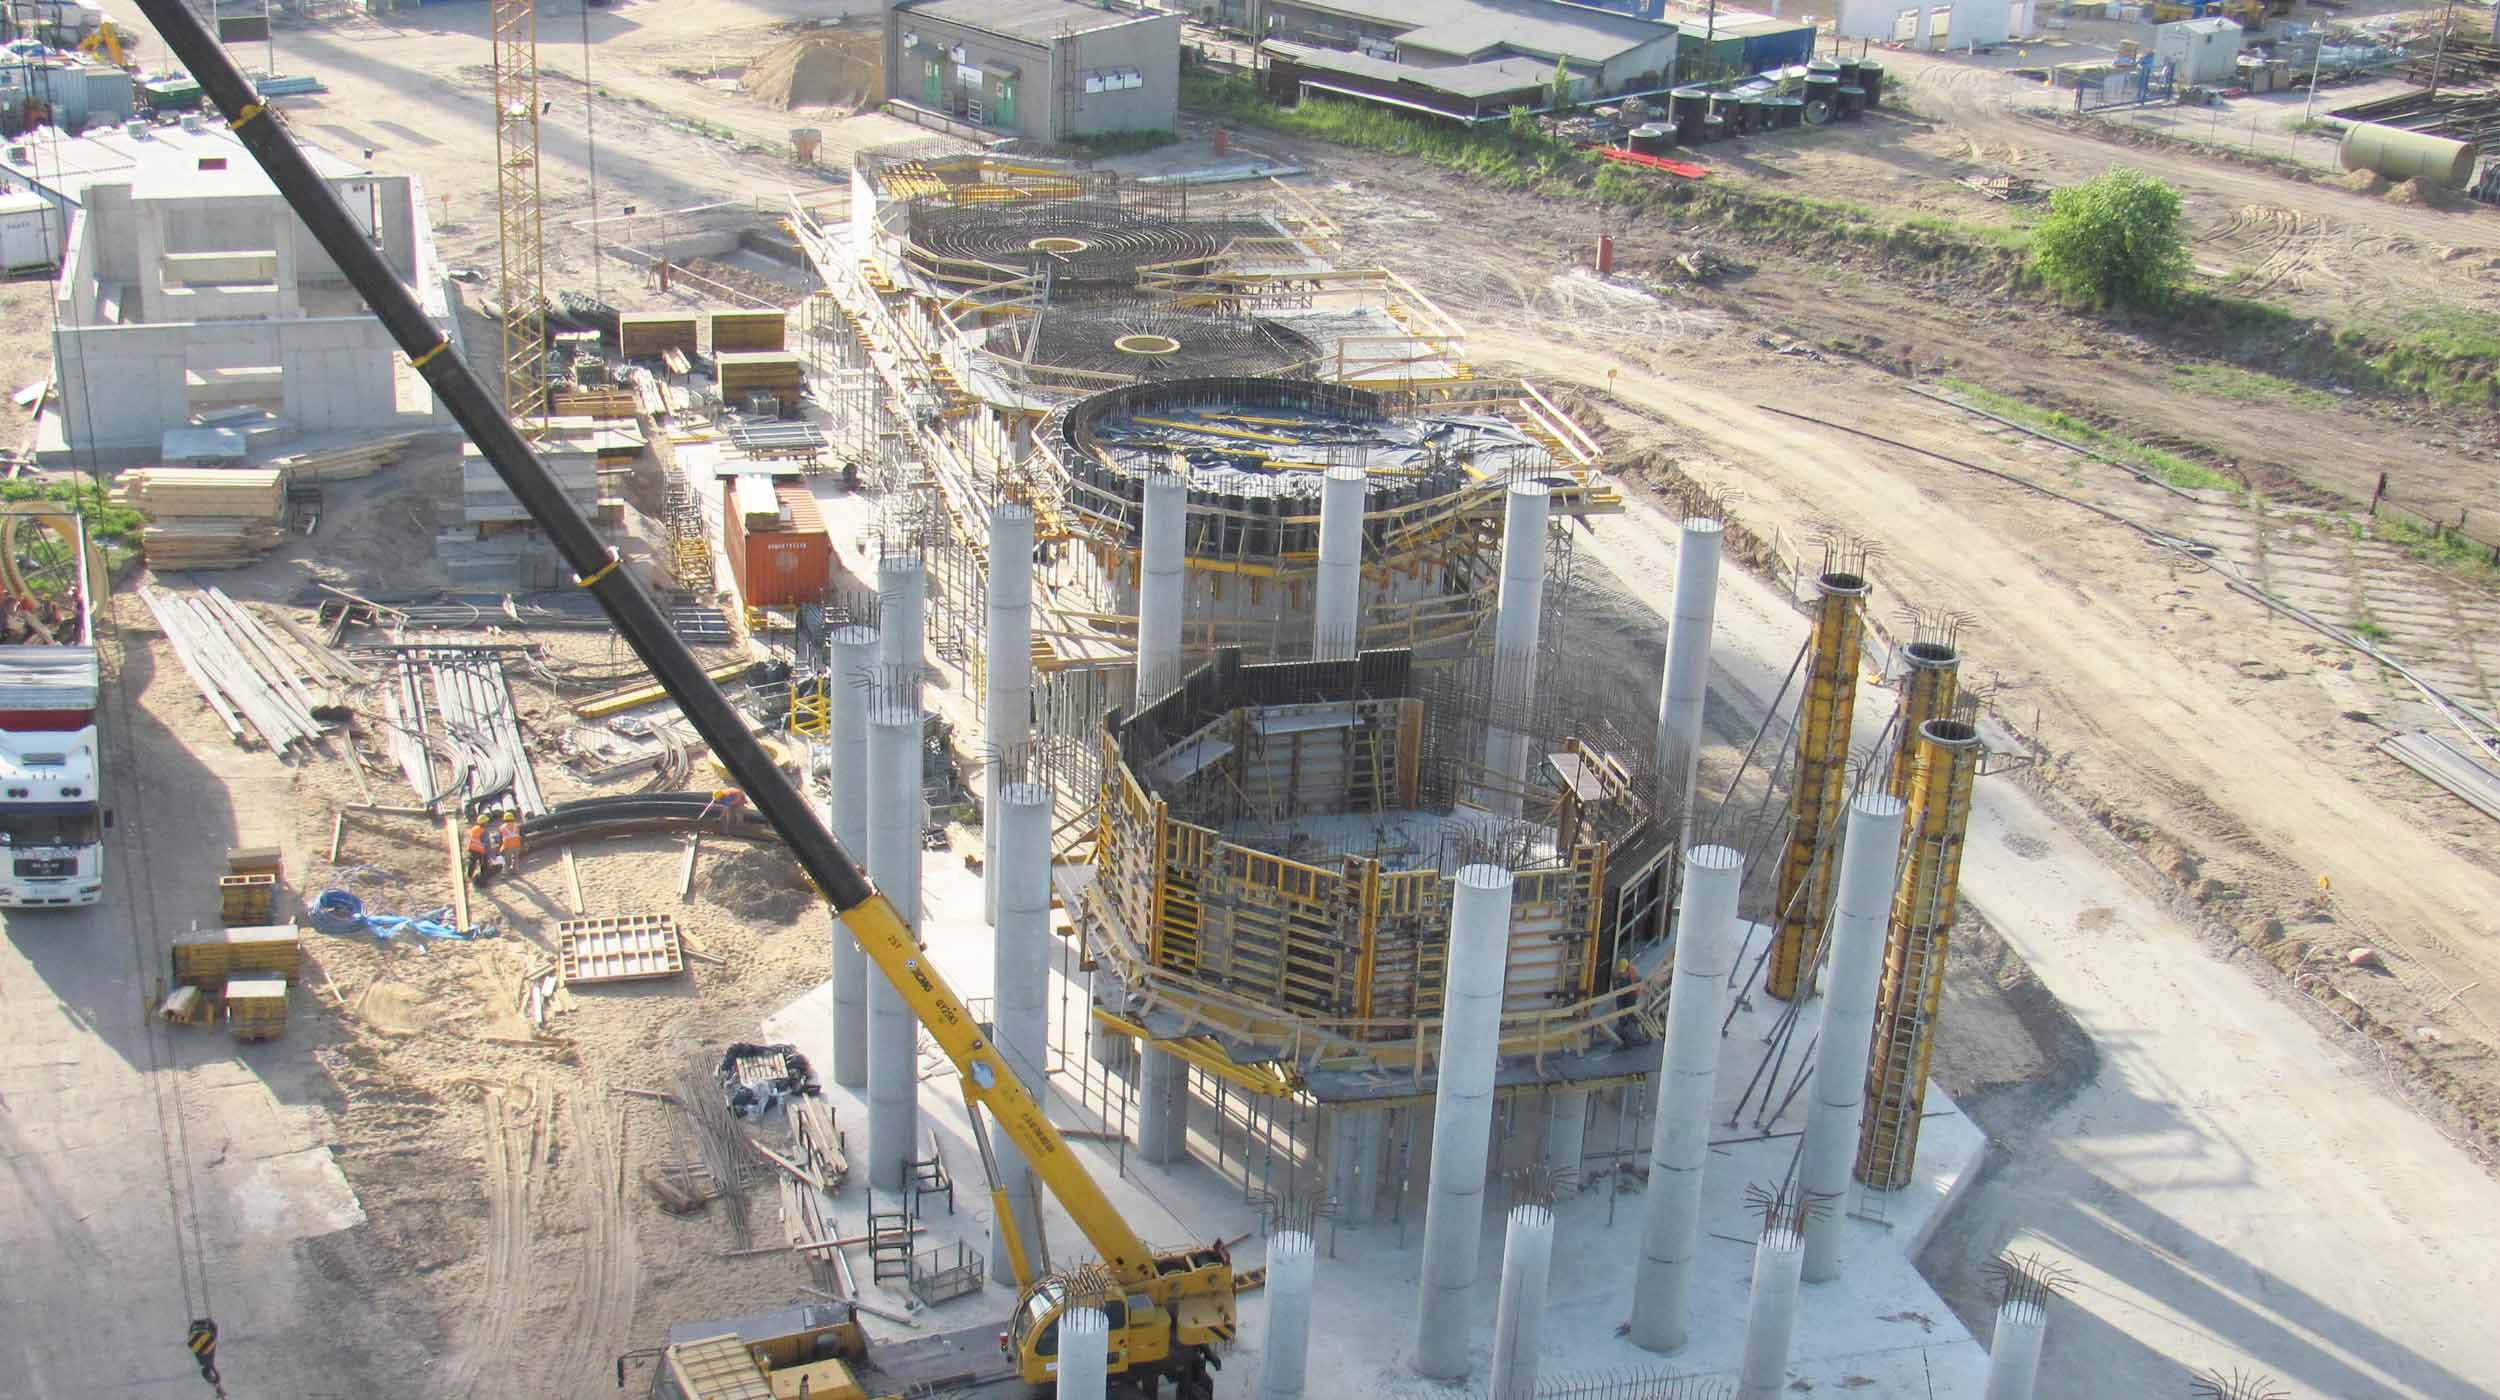 Il progetto prevede la costruzione di una centrale elettrica a biomassa con una potenza di 50MW.